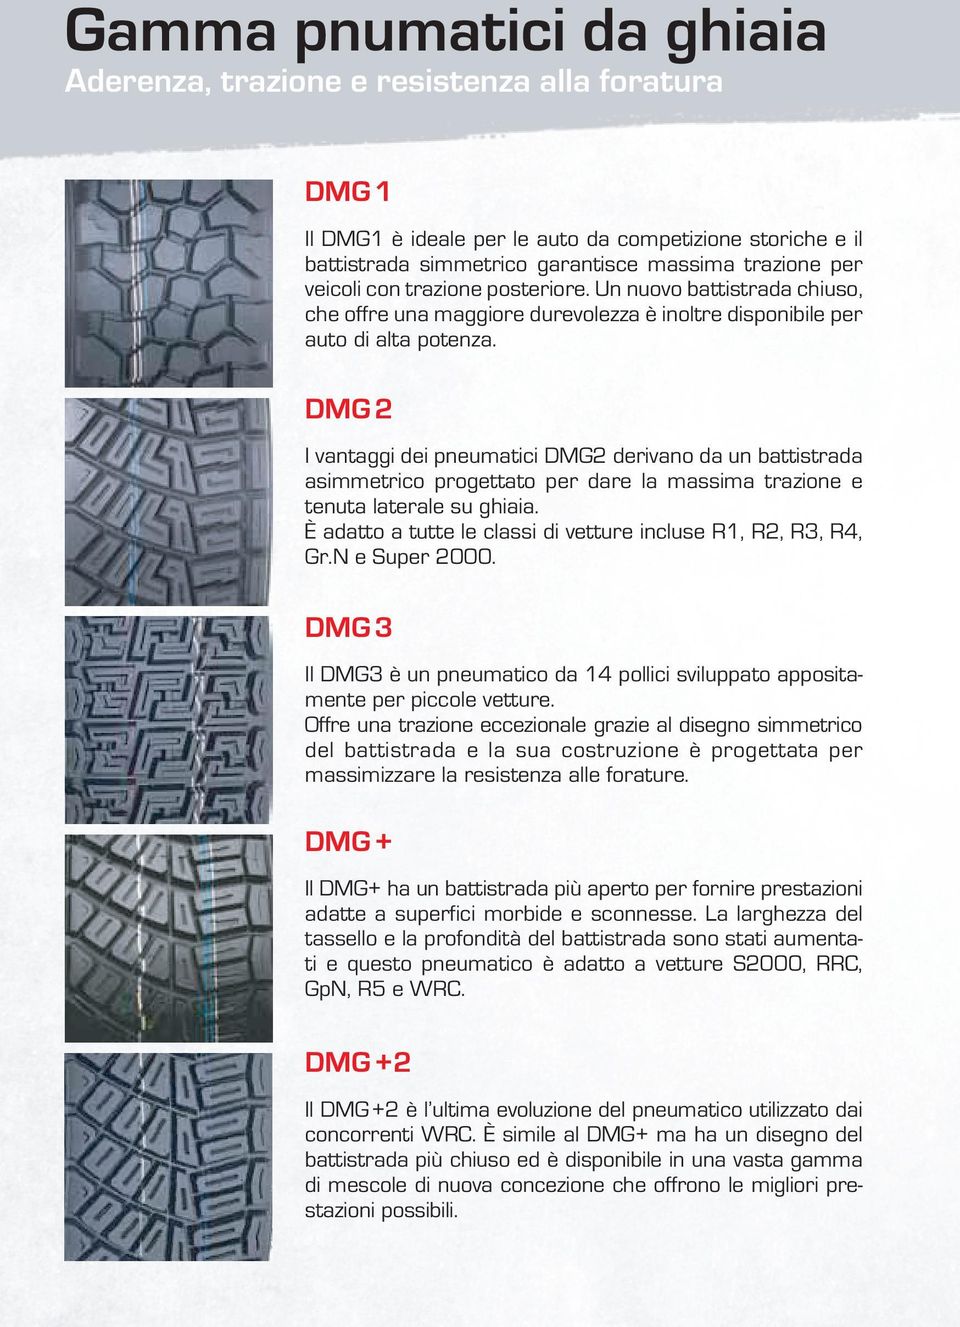 DMG 2 I vantaggi dei pneumatici DMG2 derivano da un battistrada asimmetrico progettato per dare la massima trazione e tenuta laterale su ghiaia.